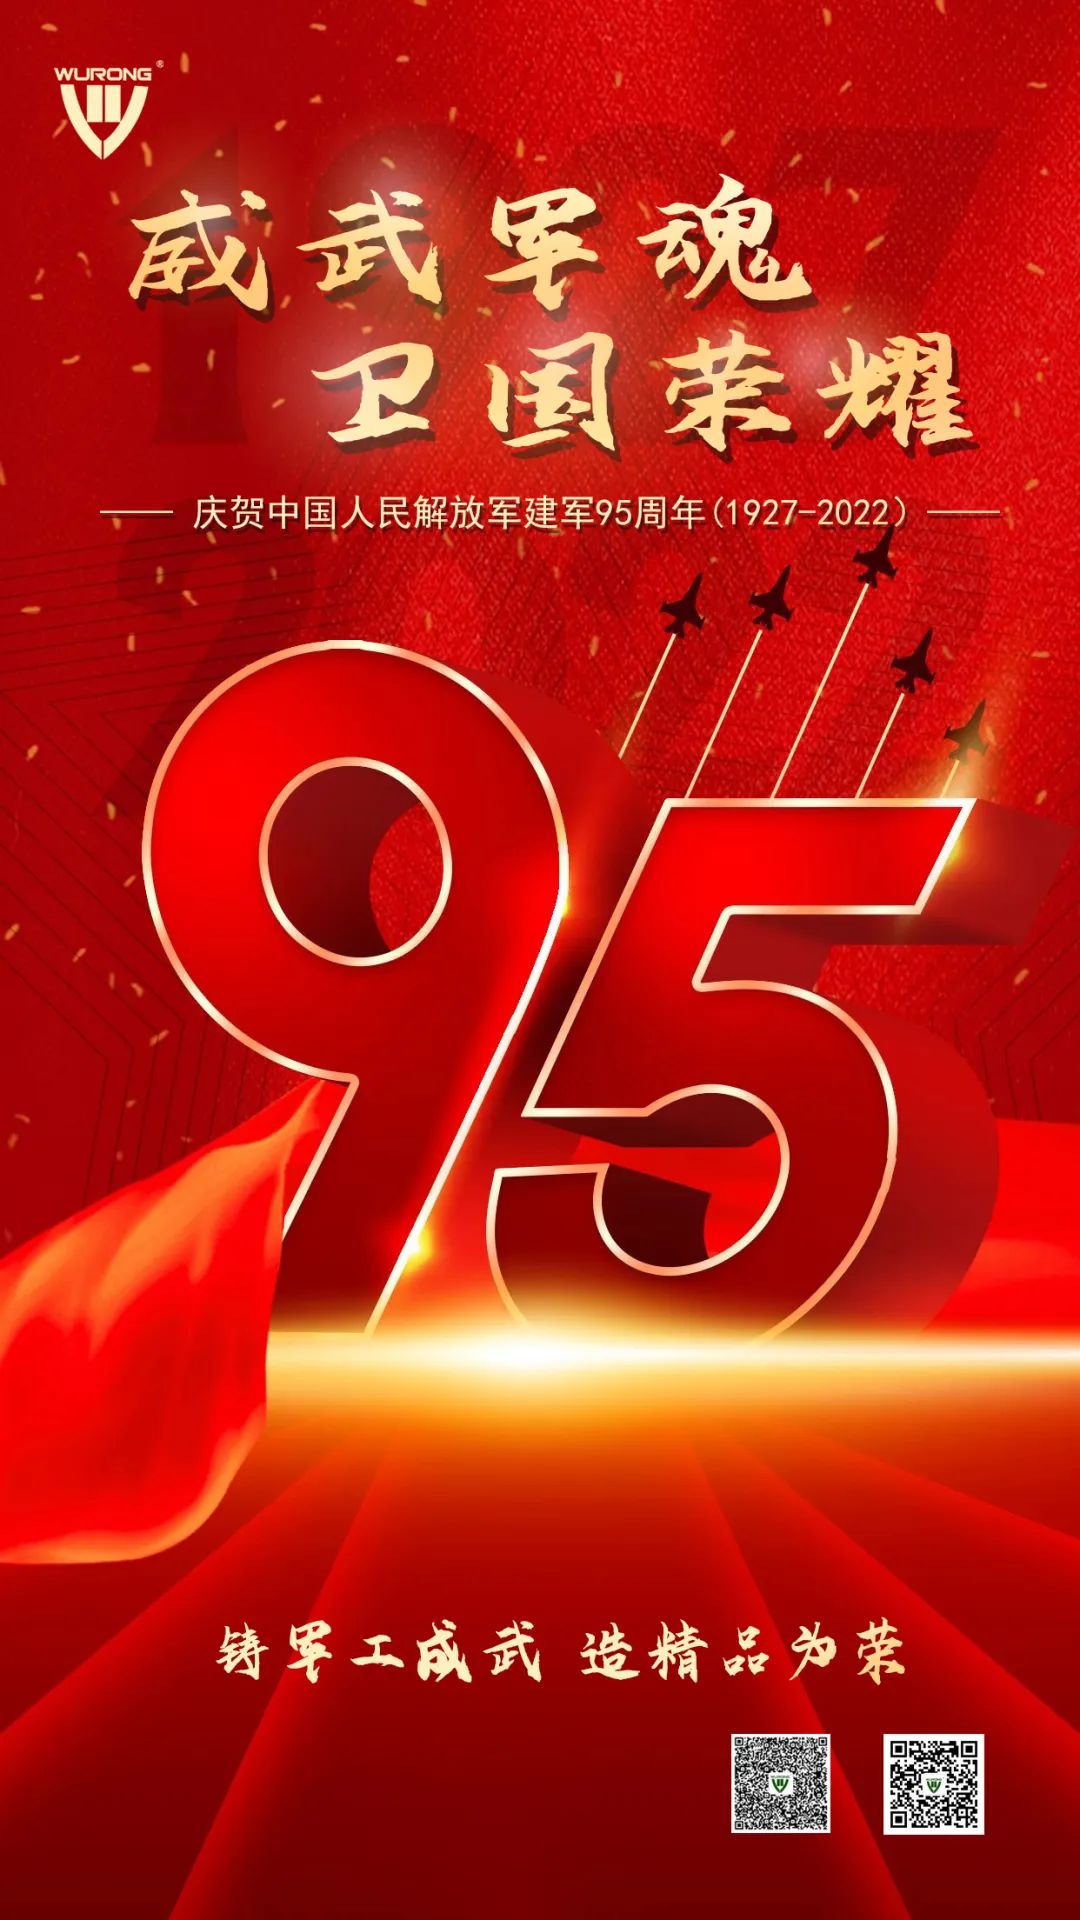 威武軍魂 衛國榮耀——熱烈慶祝中國人民解放軍建軍95周年！